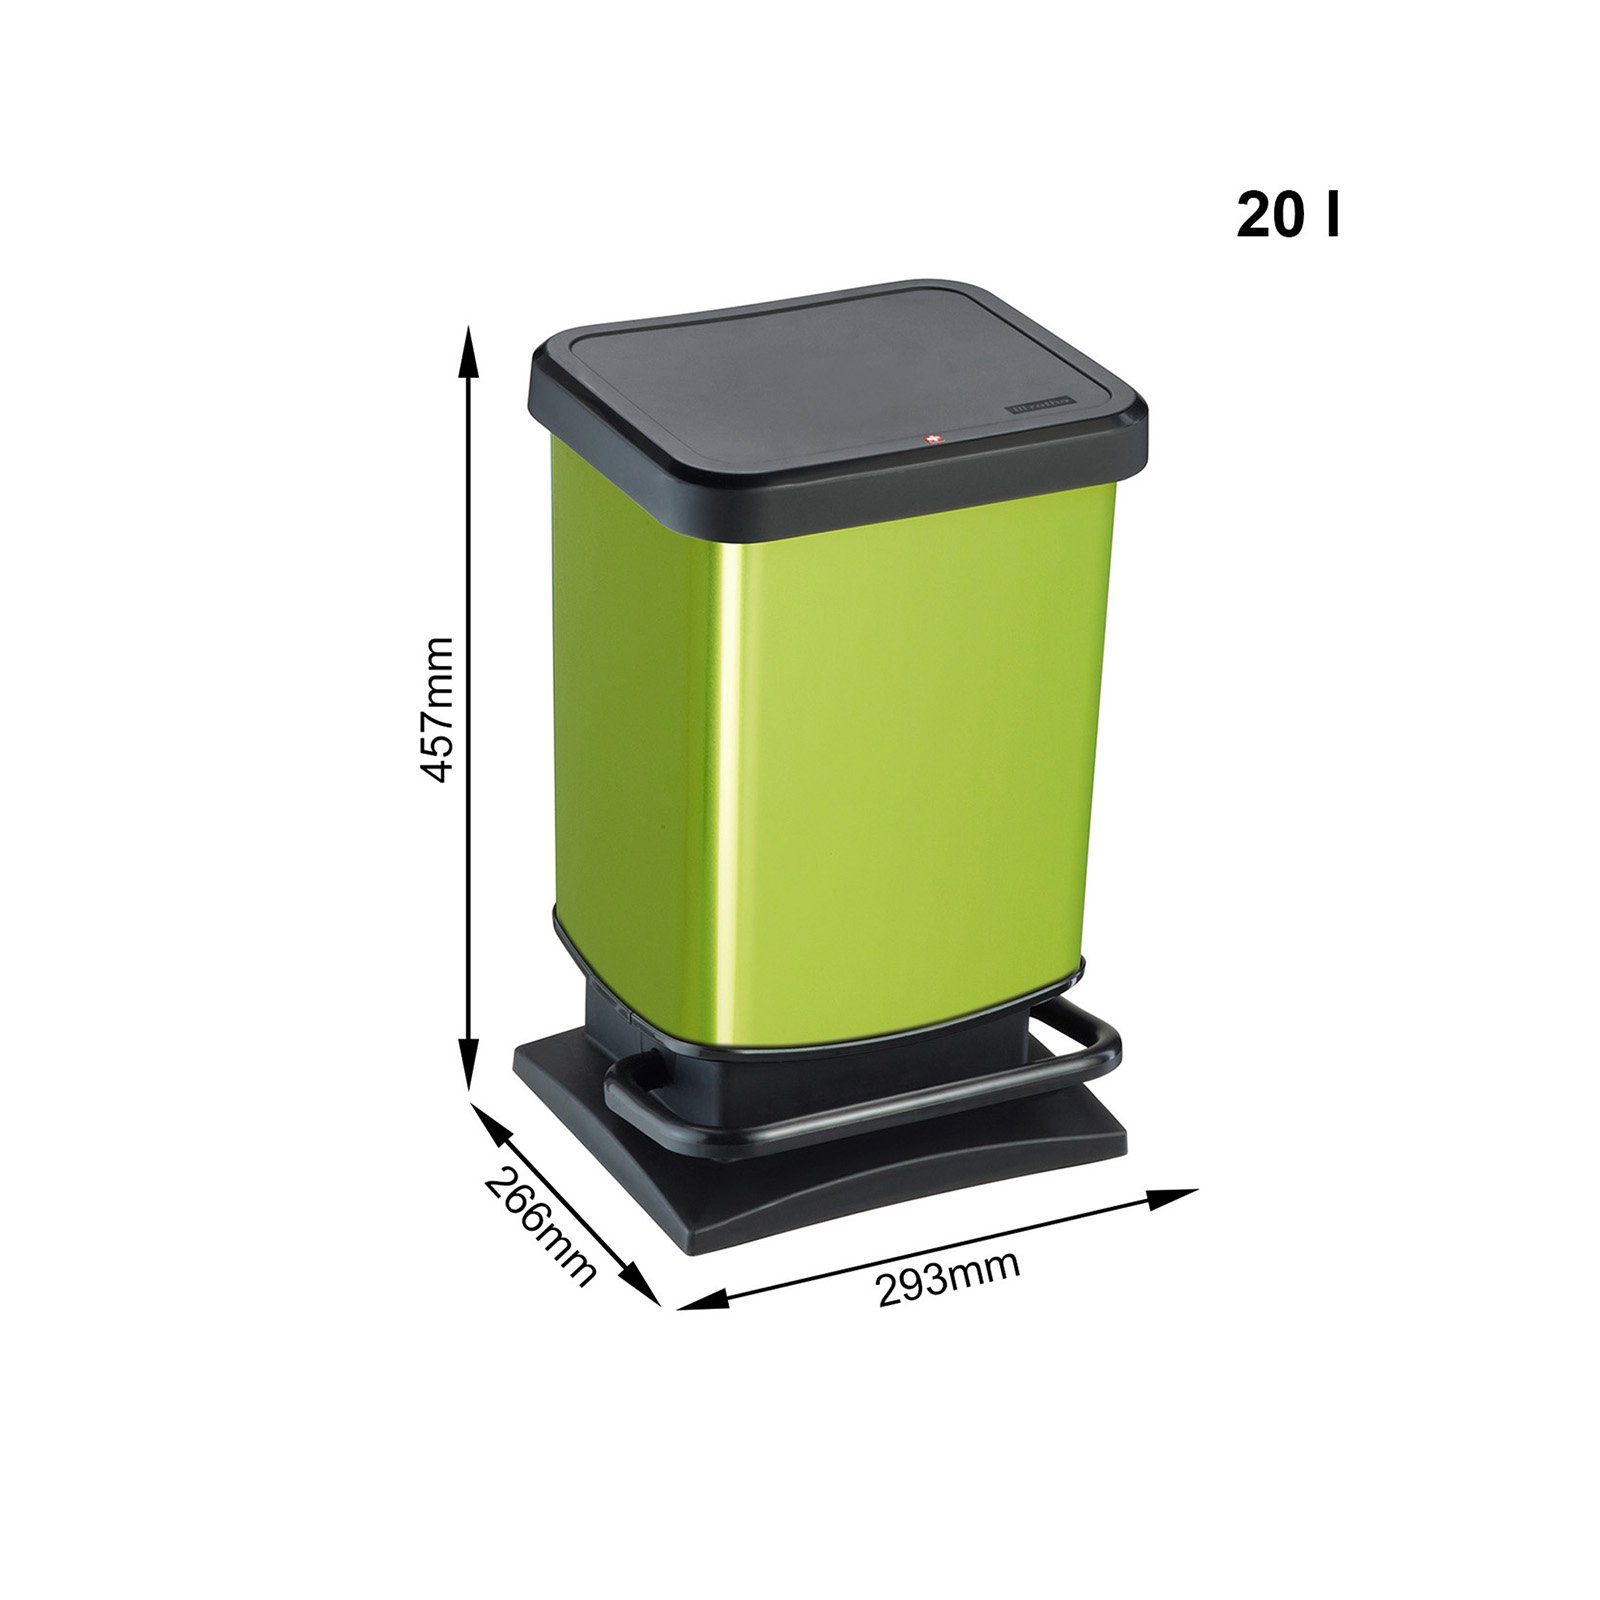 (PP) der metallic Mülleimer Mülleimer 20l Paso Schweiz hergestellt mit Grün ROTHO Deckel, Kunststoff BPA-frei, in